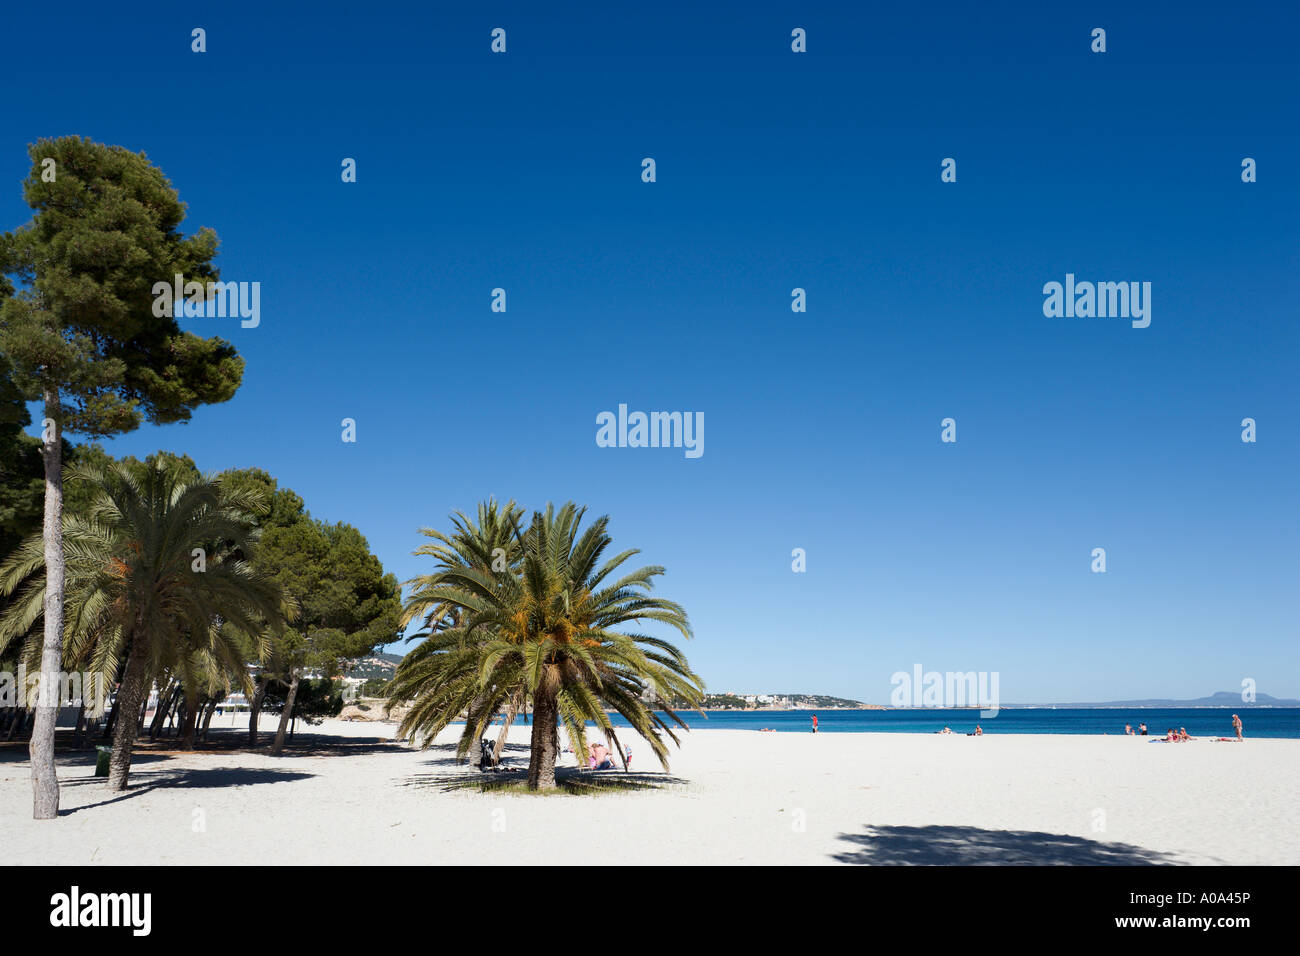 Spiaggia in inverno, Palma Nova, la baia di Palma di Maiorca, isole Baleari, Spagna Foto Stock